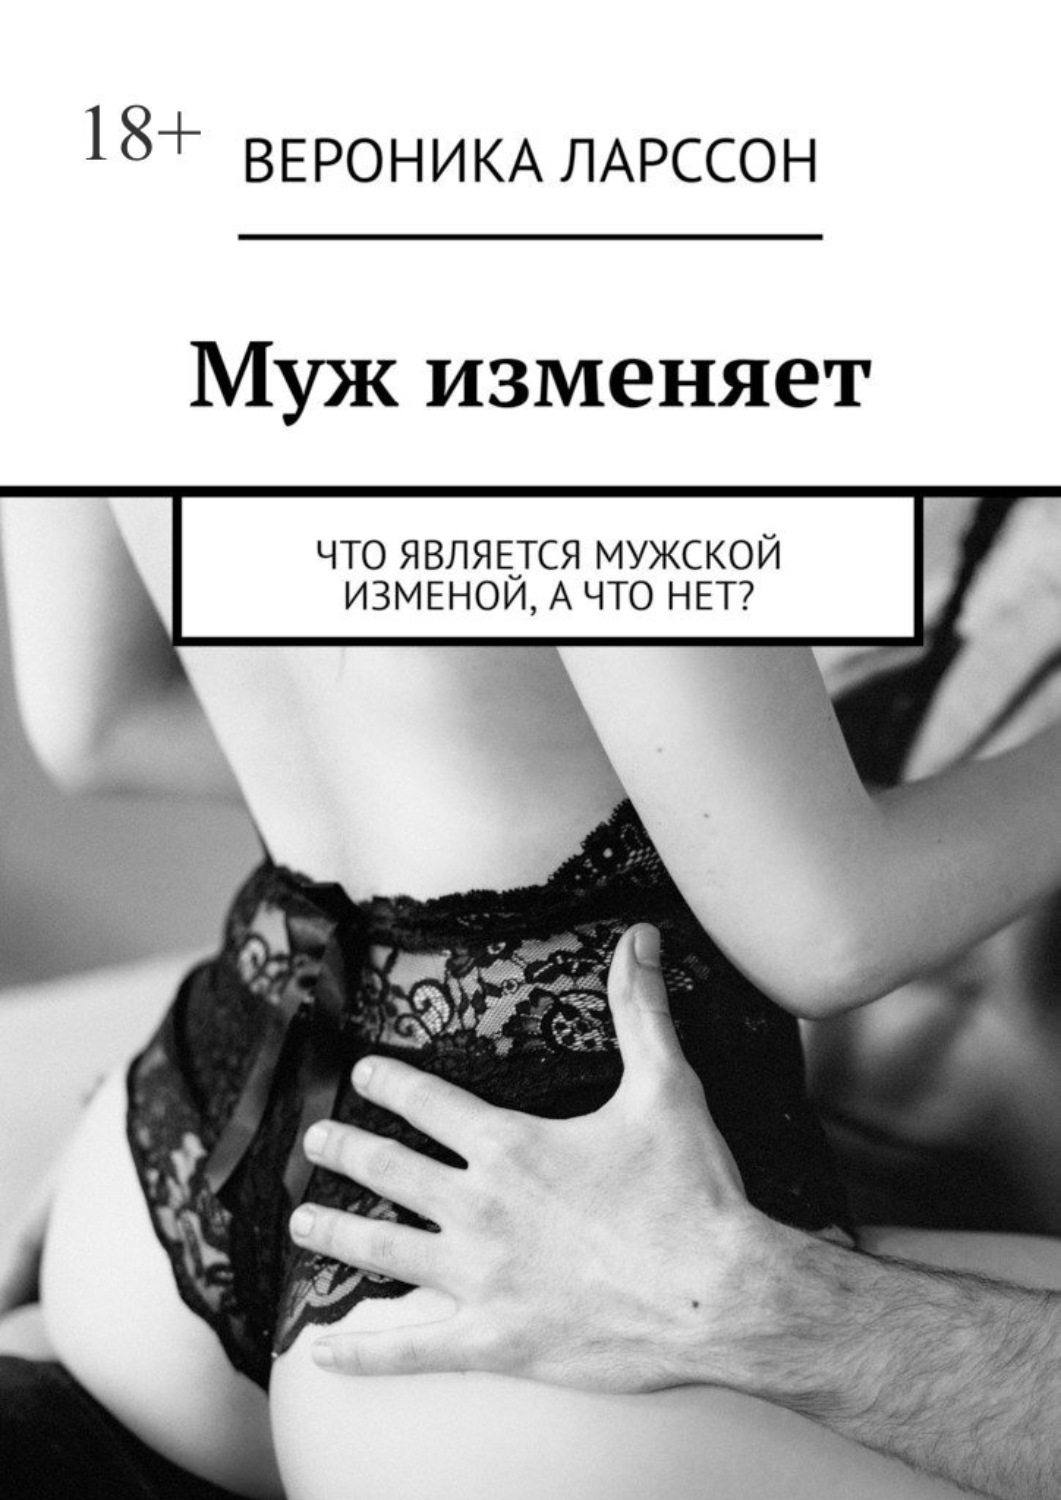 русский любовный роман про измену фото 17